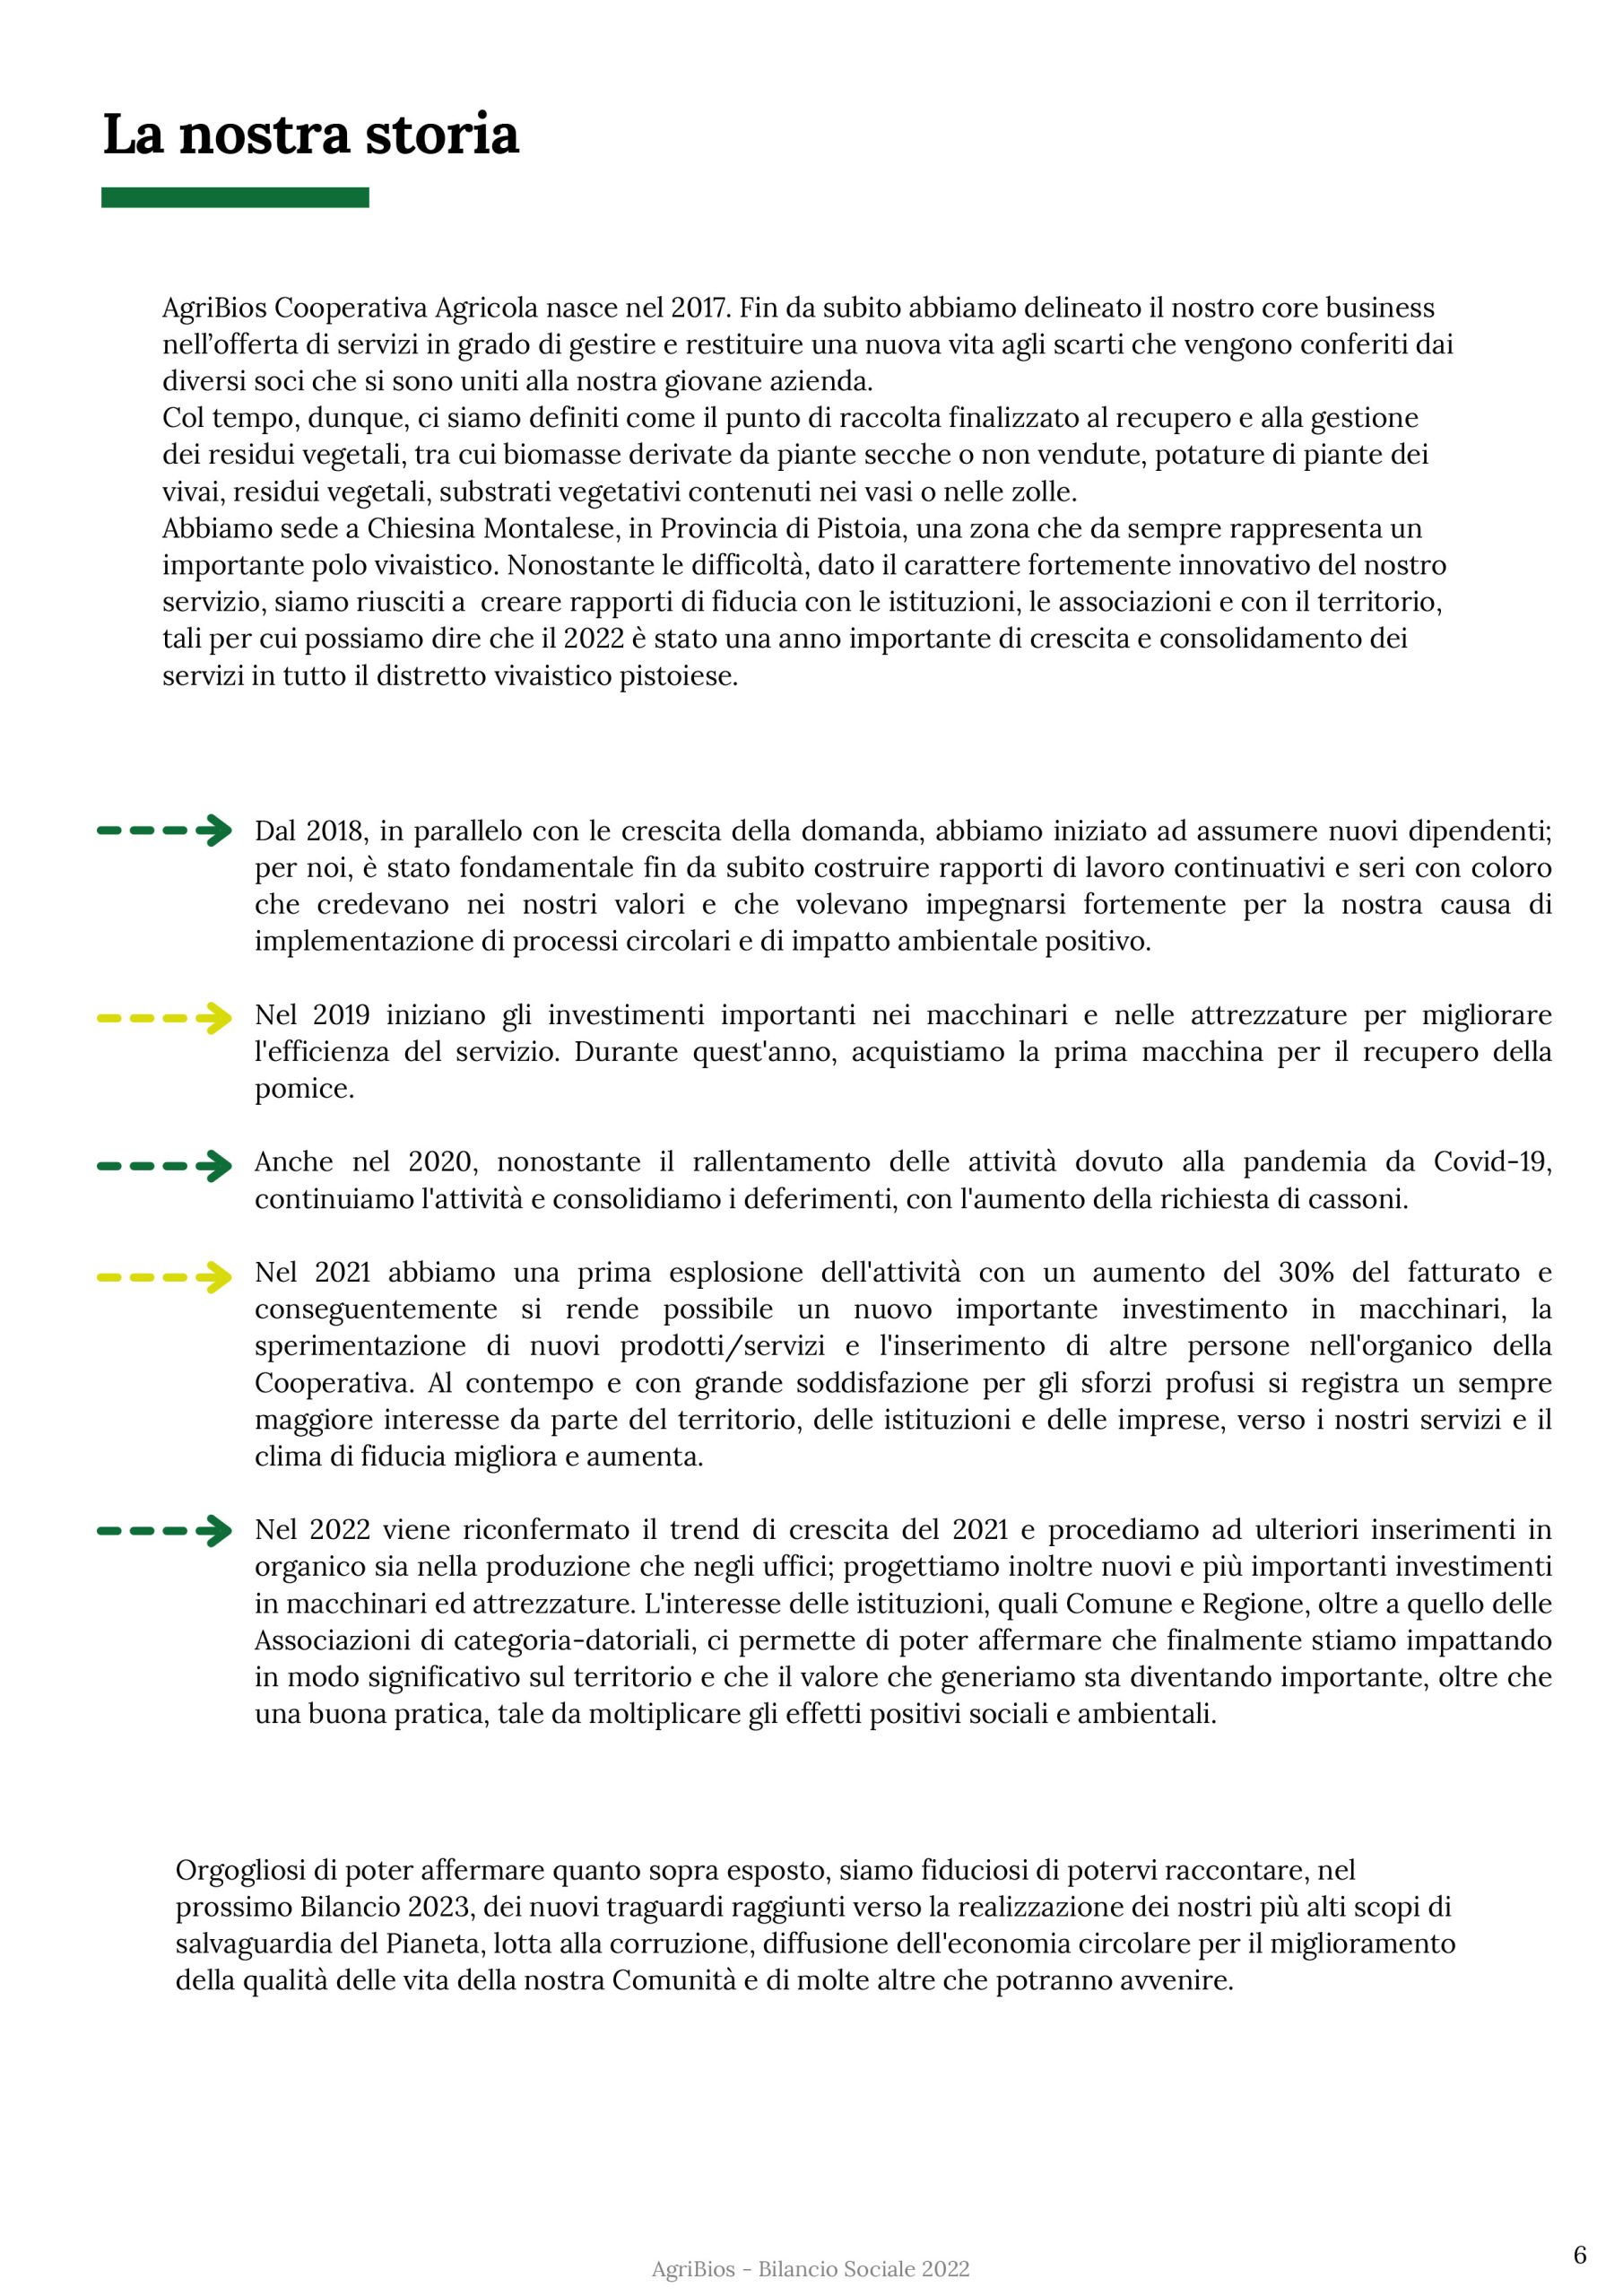 Bilancio Sociale_AGRIBIOS_2022-8